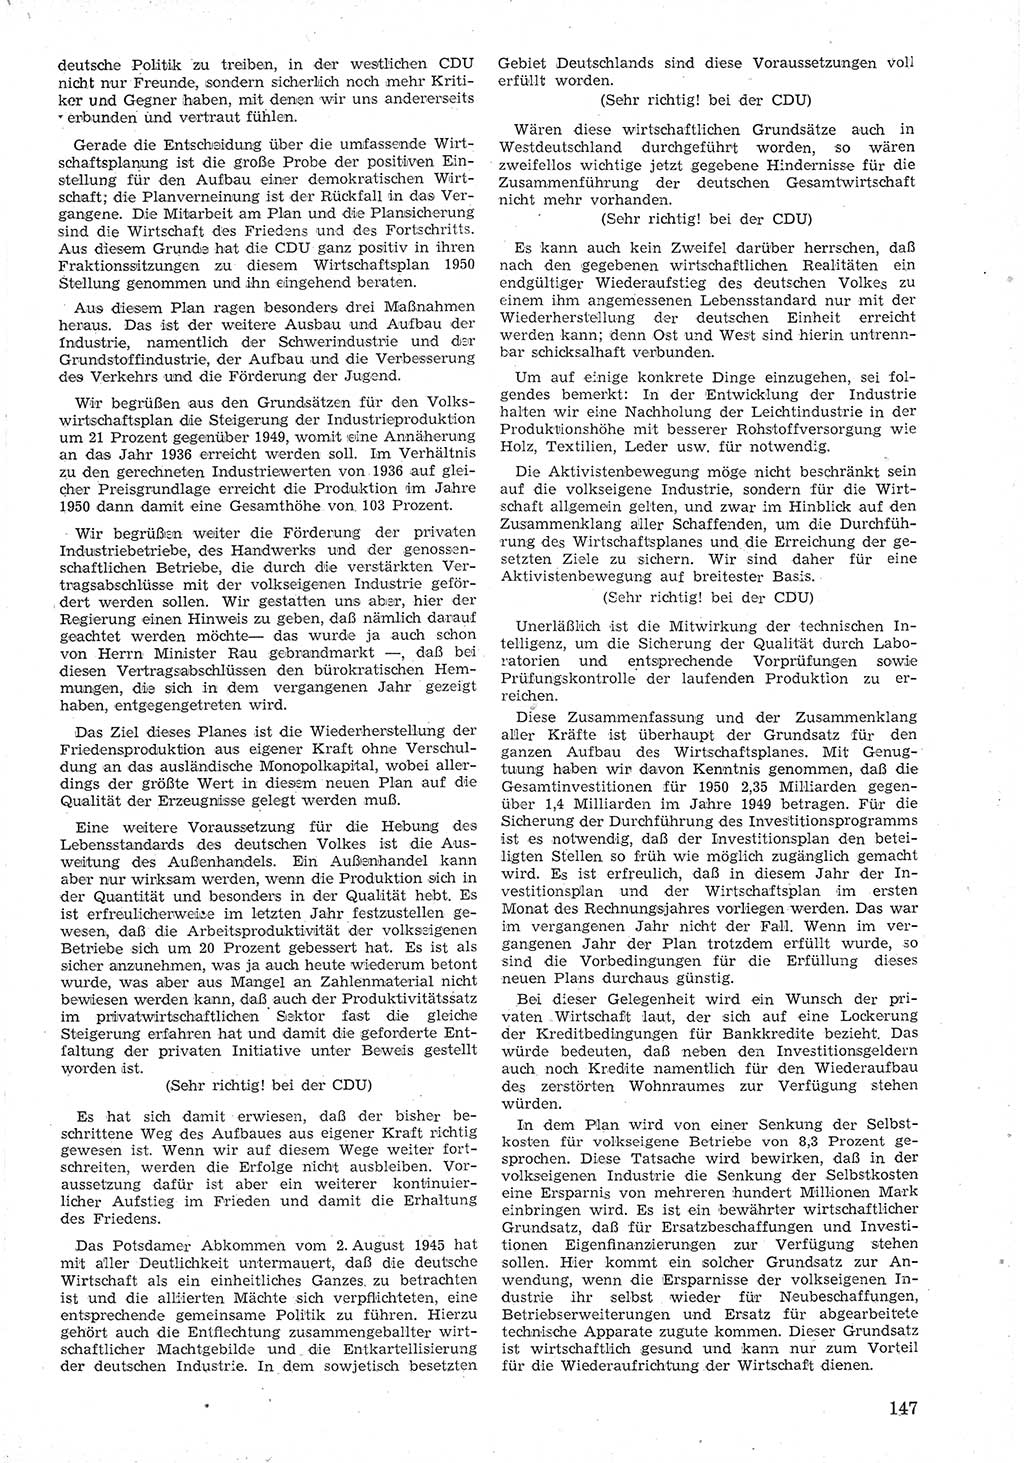 Provisorische Volkskammer (VK) der Deutschen Demokratischen Republik (DDR) 1949-1950, Dokument 159 (Prov. VK DDR 1949-1950, Dok. 159)